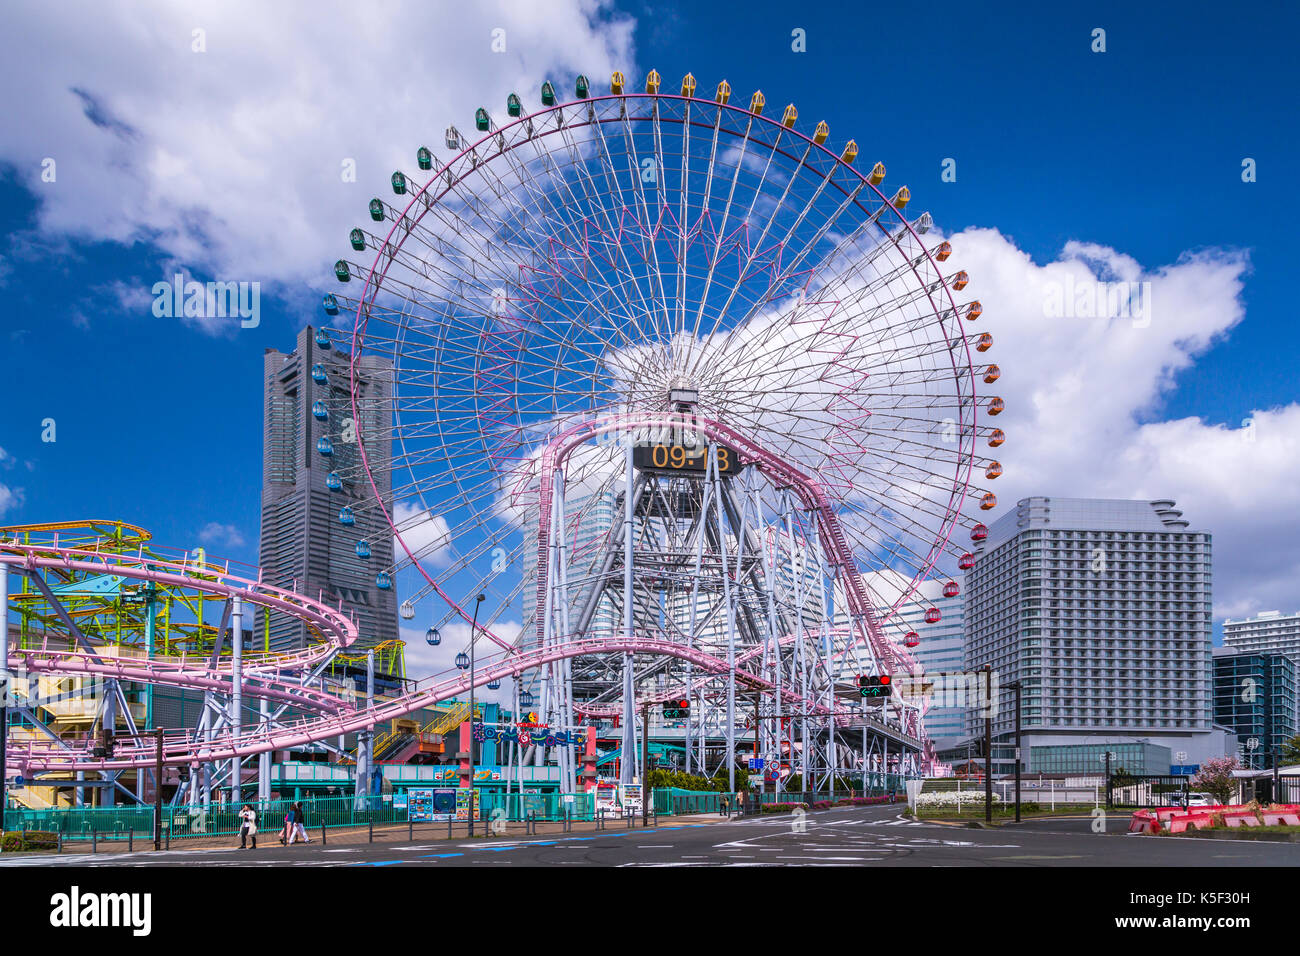 Le Cosmoworld amusement park dans le Minato Mirai 21 Zone urbaine au bord de la ville portuaire de Yokohama, Japon, Asie. Banque D'Images